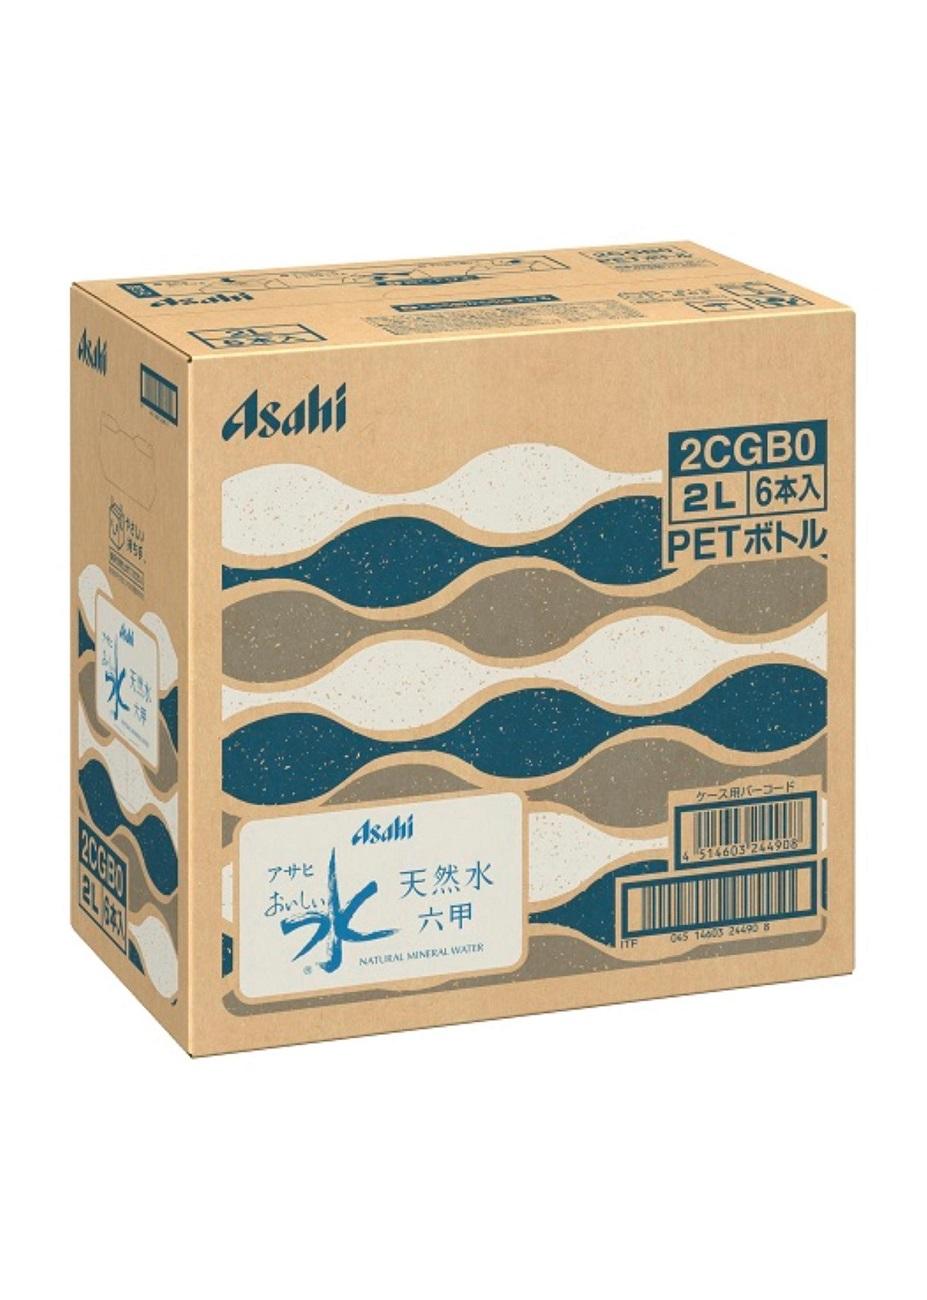 アサヒ おいしい水 天然水 六甲 PET2L×6本(6本入り1ケース)